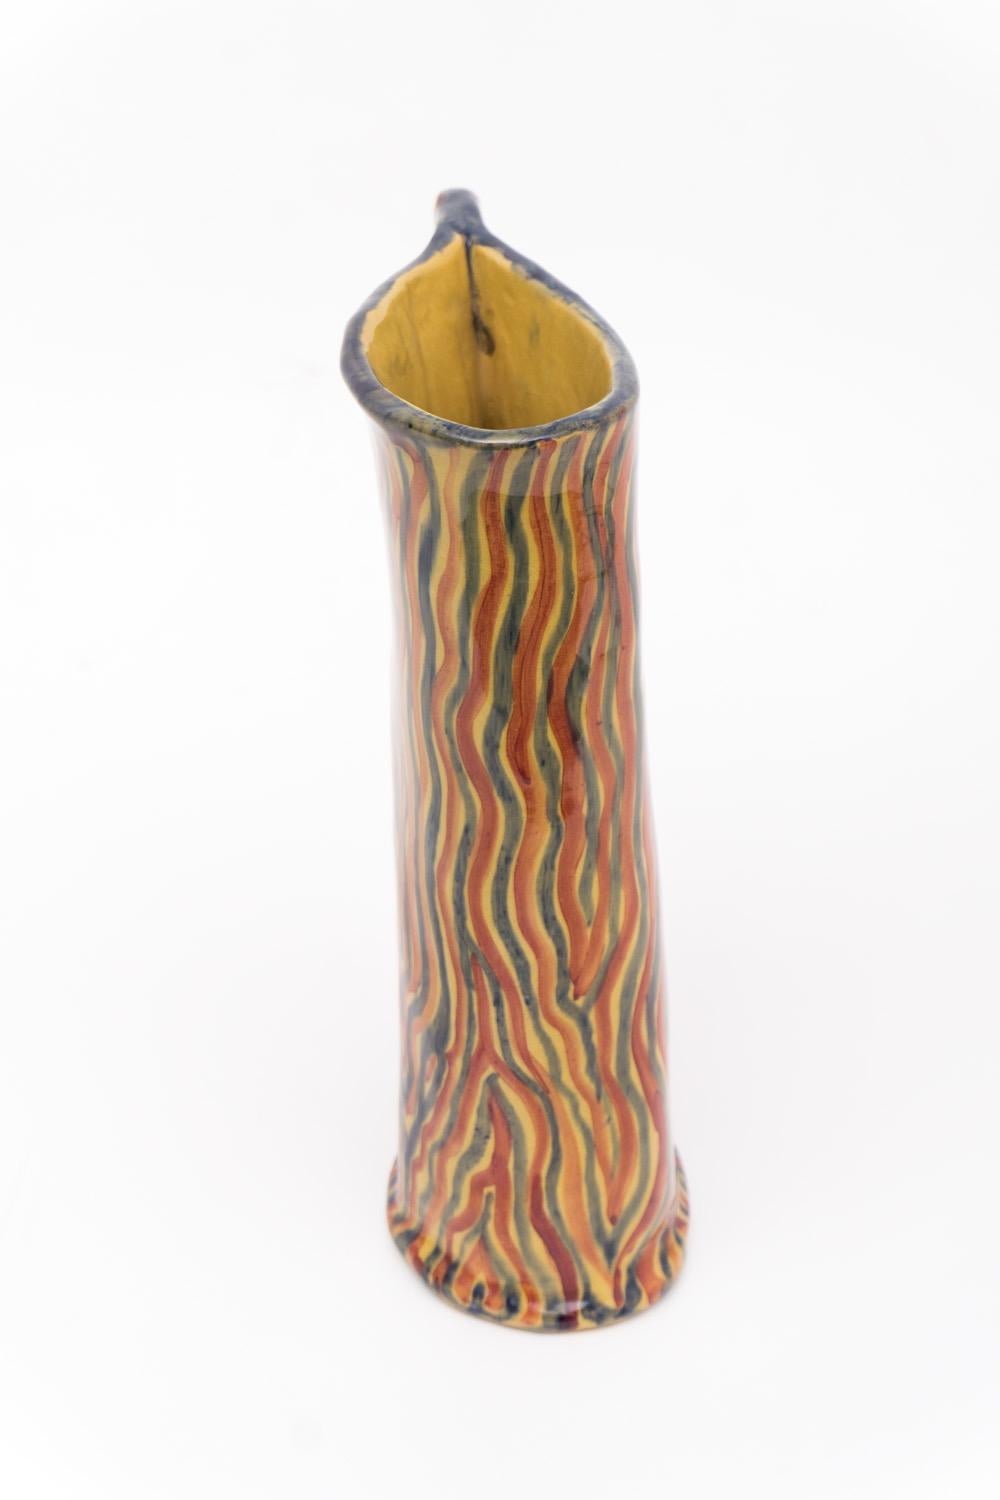 Fröhlicher Keramikkrug von Ceramiche Albisola. Er hat eine glatte, glasierte Oberfläche mit flammenartigen Streifen in Rot, Blau und Gelb. Unten signiert 